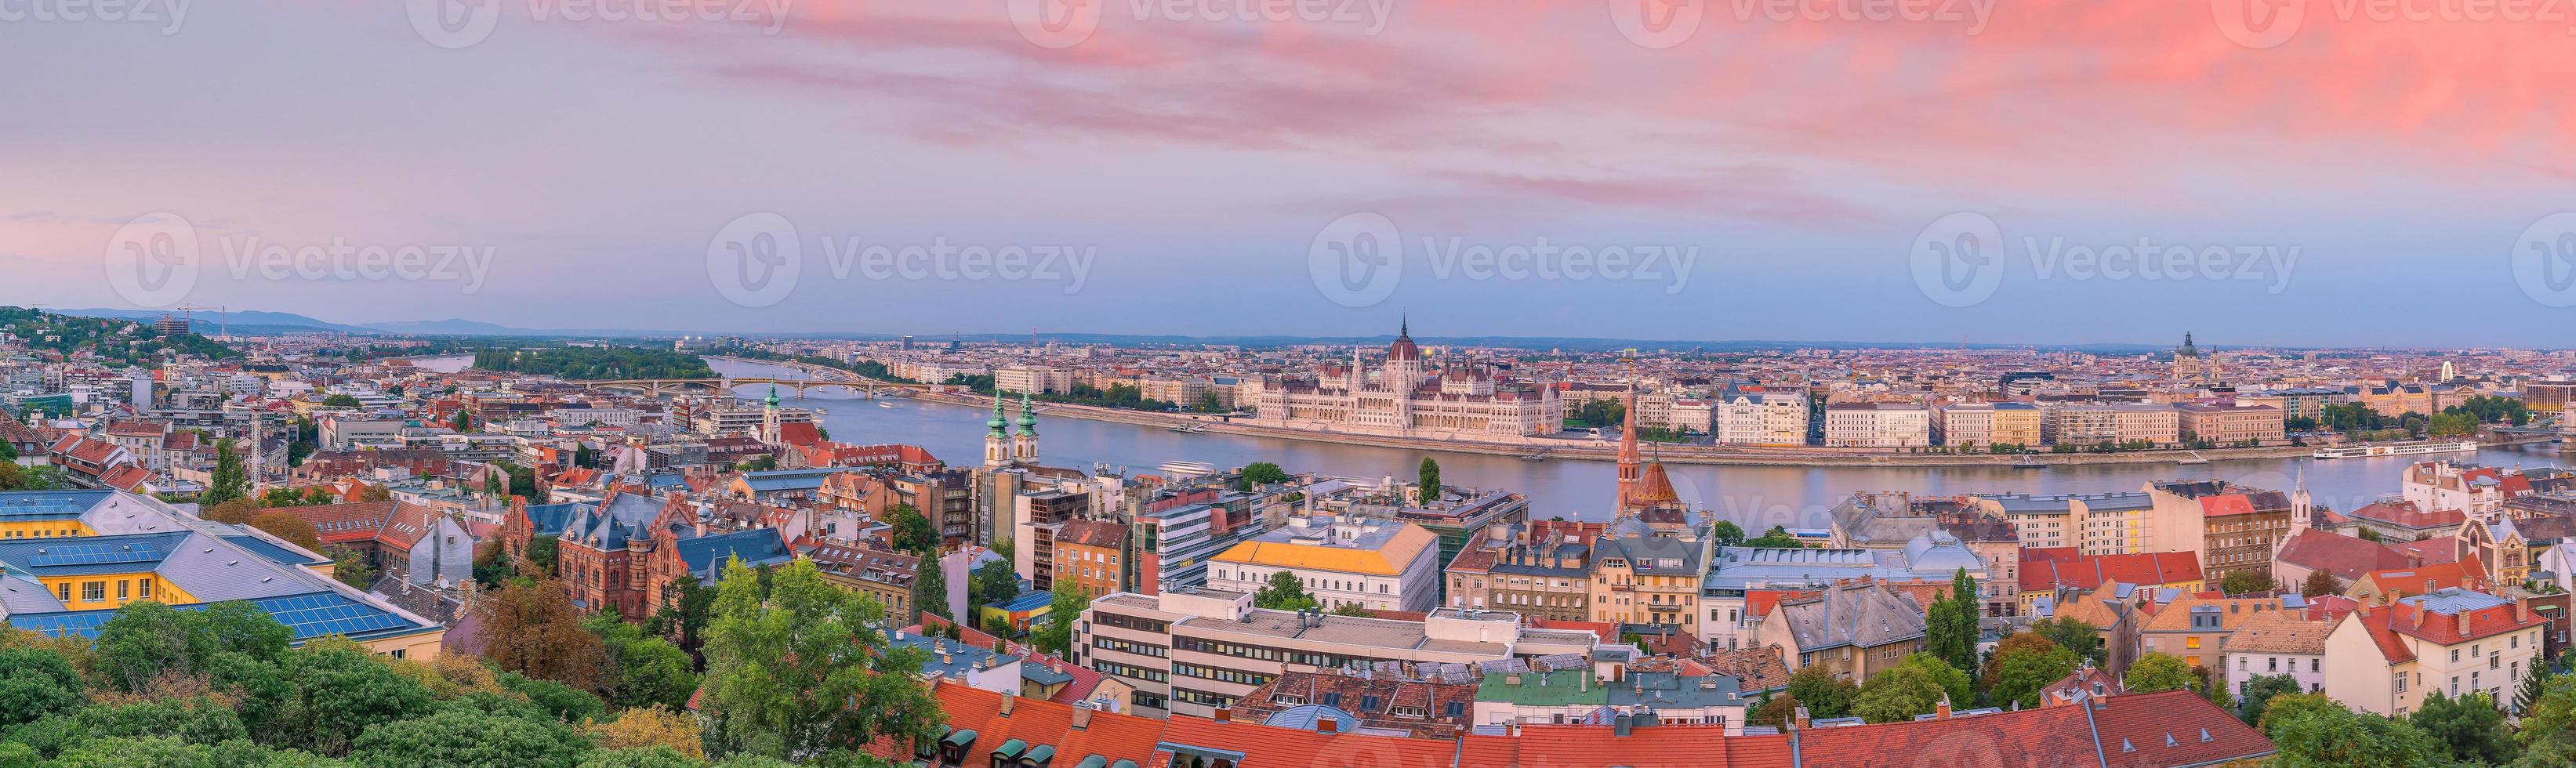 skyline di budapest in ungheria foto